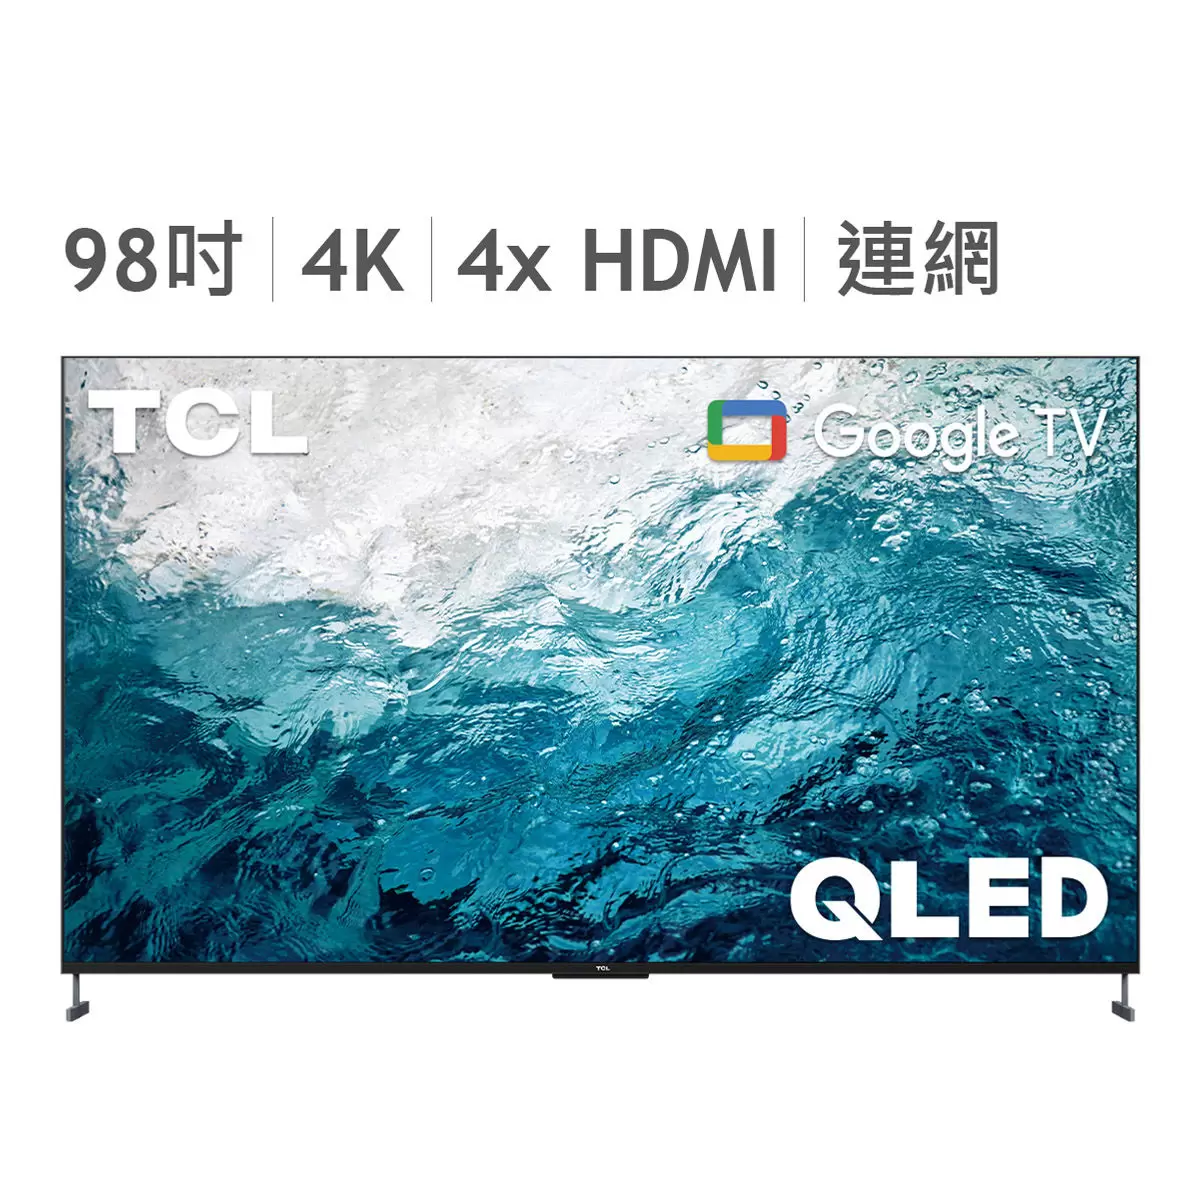 TCL 98吋 4K QLED Google TV 量子智能連網液晶顯示器不含視訊盒 98C735